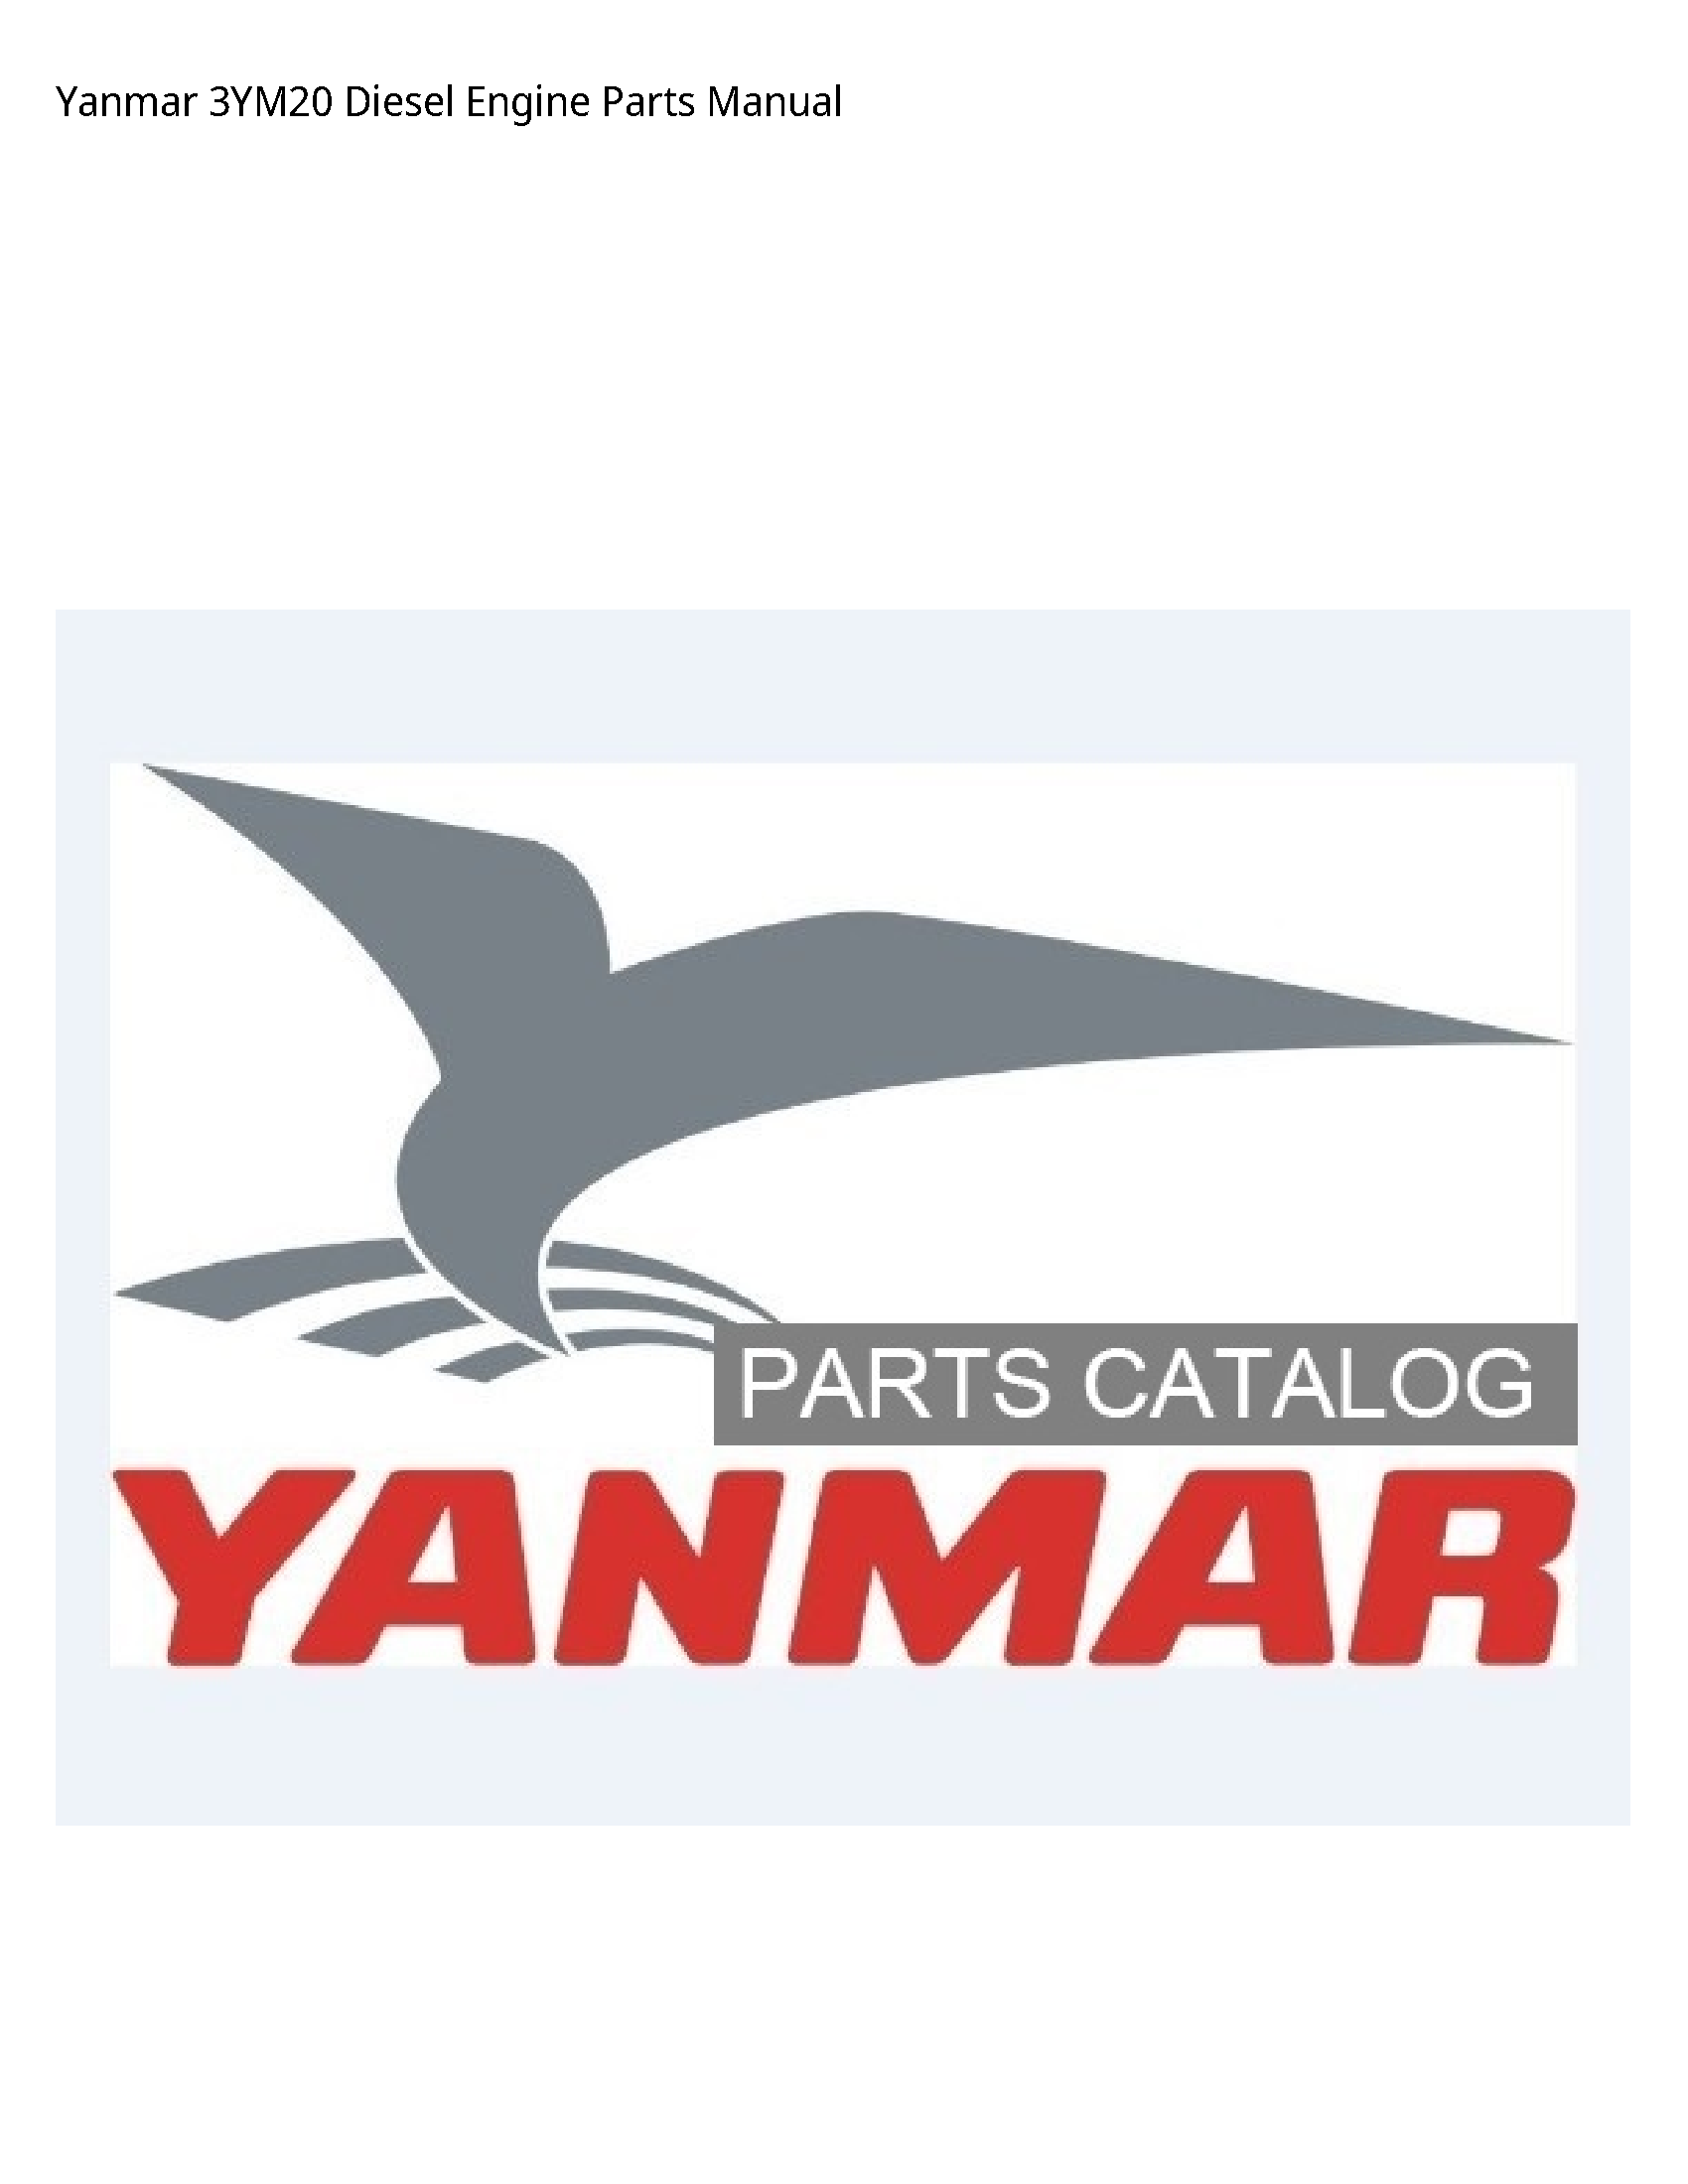 Yanmar 3YM20 Diesel Engine Parts manual